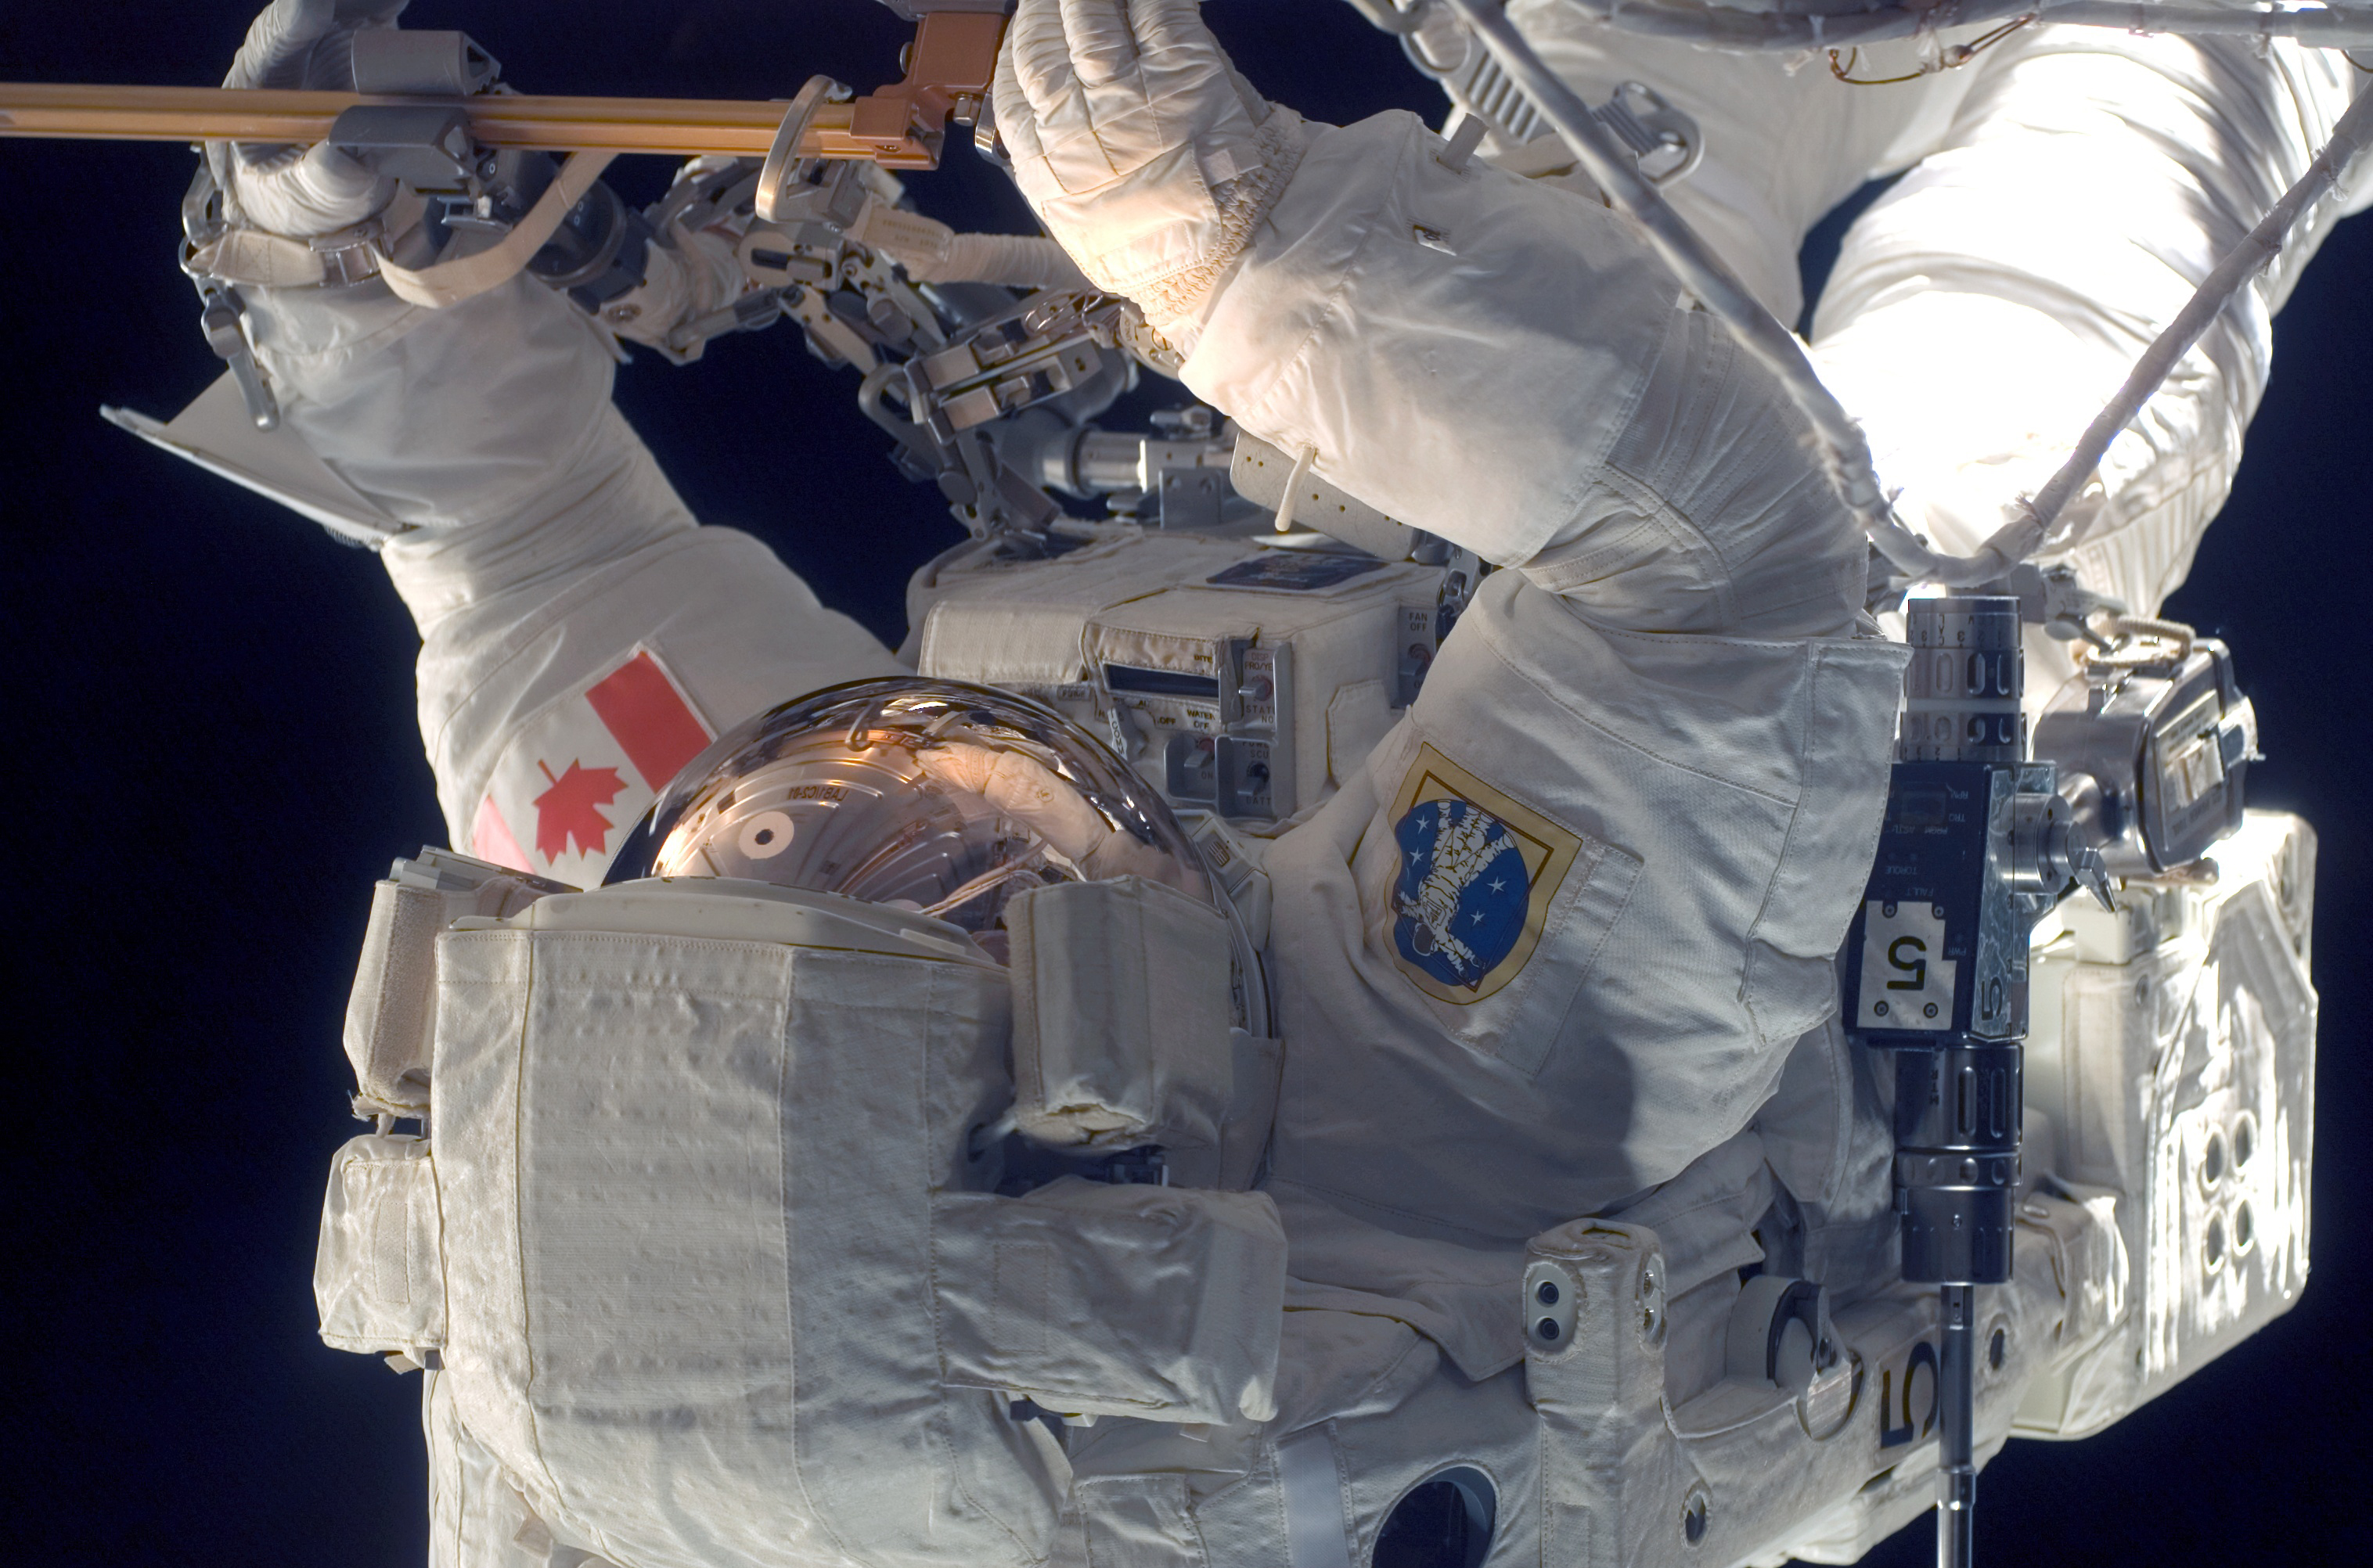 Космонавт в открытом космосе картинки